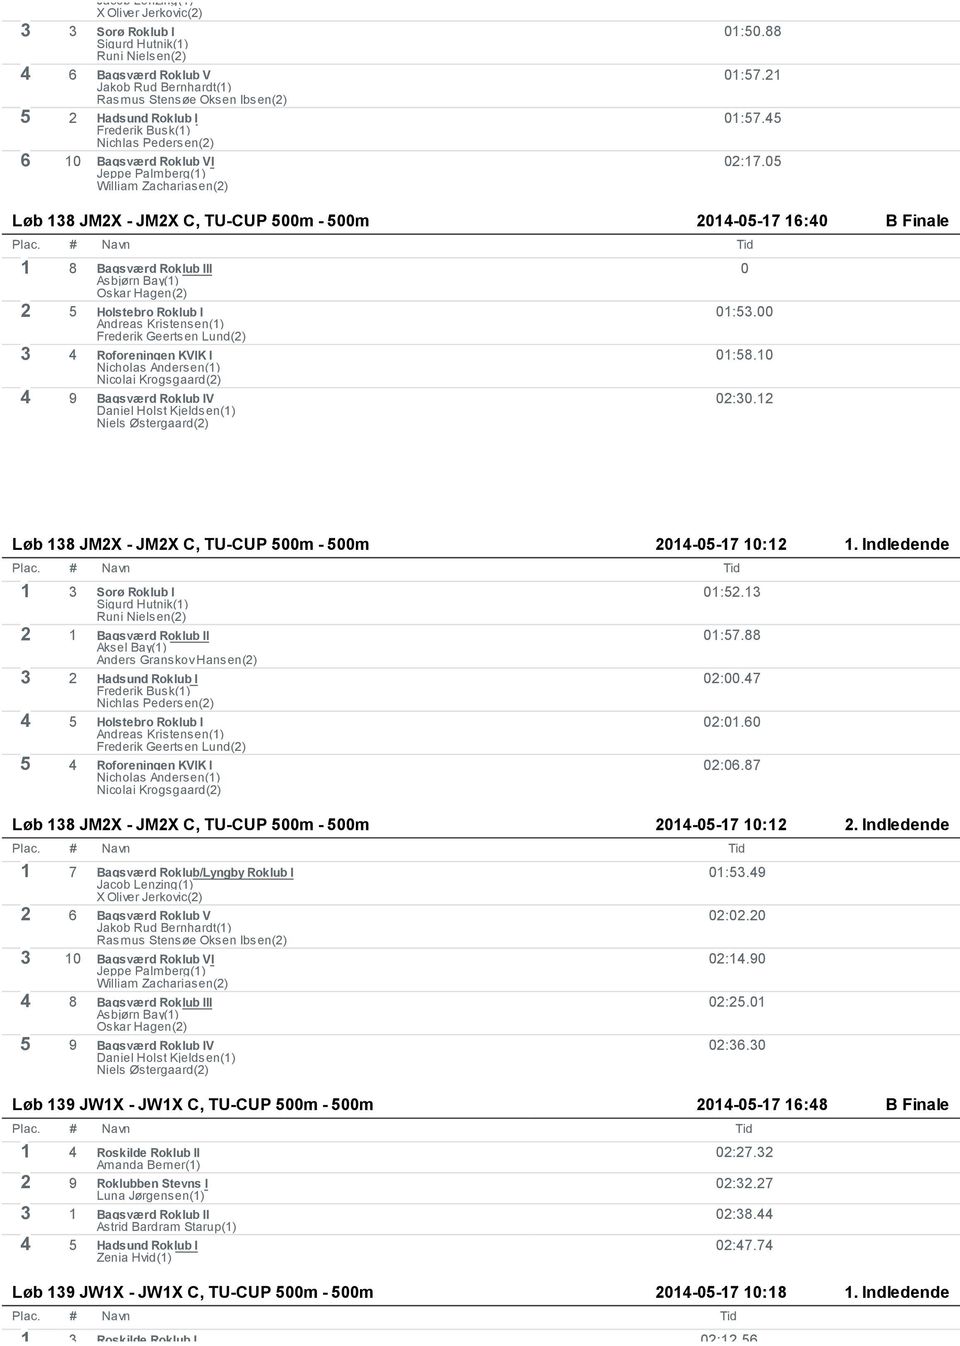 05 Løb 138 JM2X - JM2X C, TU-CUP 500m - 500m 2014-05-17 16:40 B Finale 1 8 Bagsværd Roklub III Asbjørn Bay(1) Oskar Hagen(2) 0 2 5 Holstebro Roklub I Andreas Kristensen(1) Frederik Geertsen Lund(2) 3